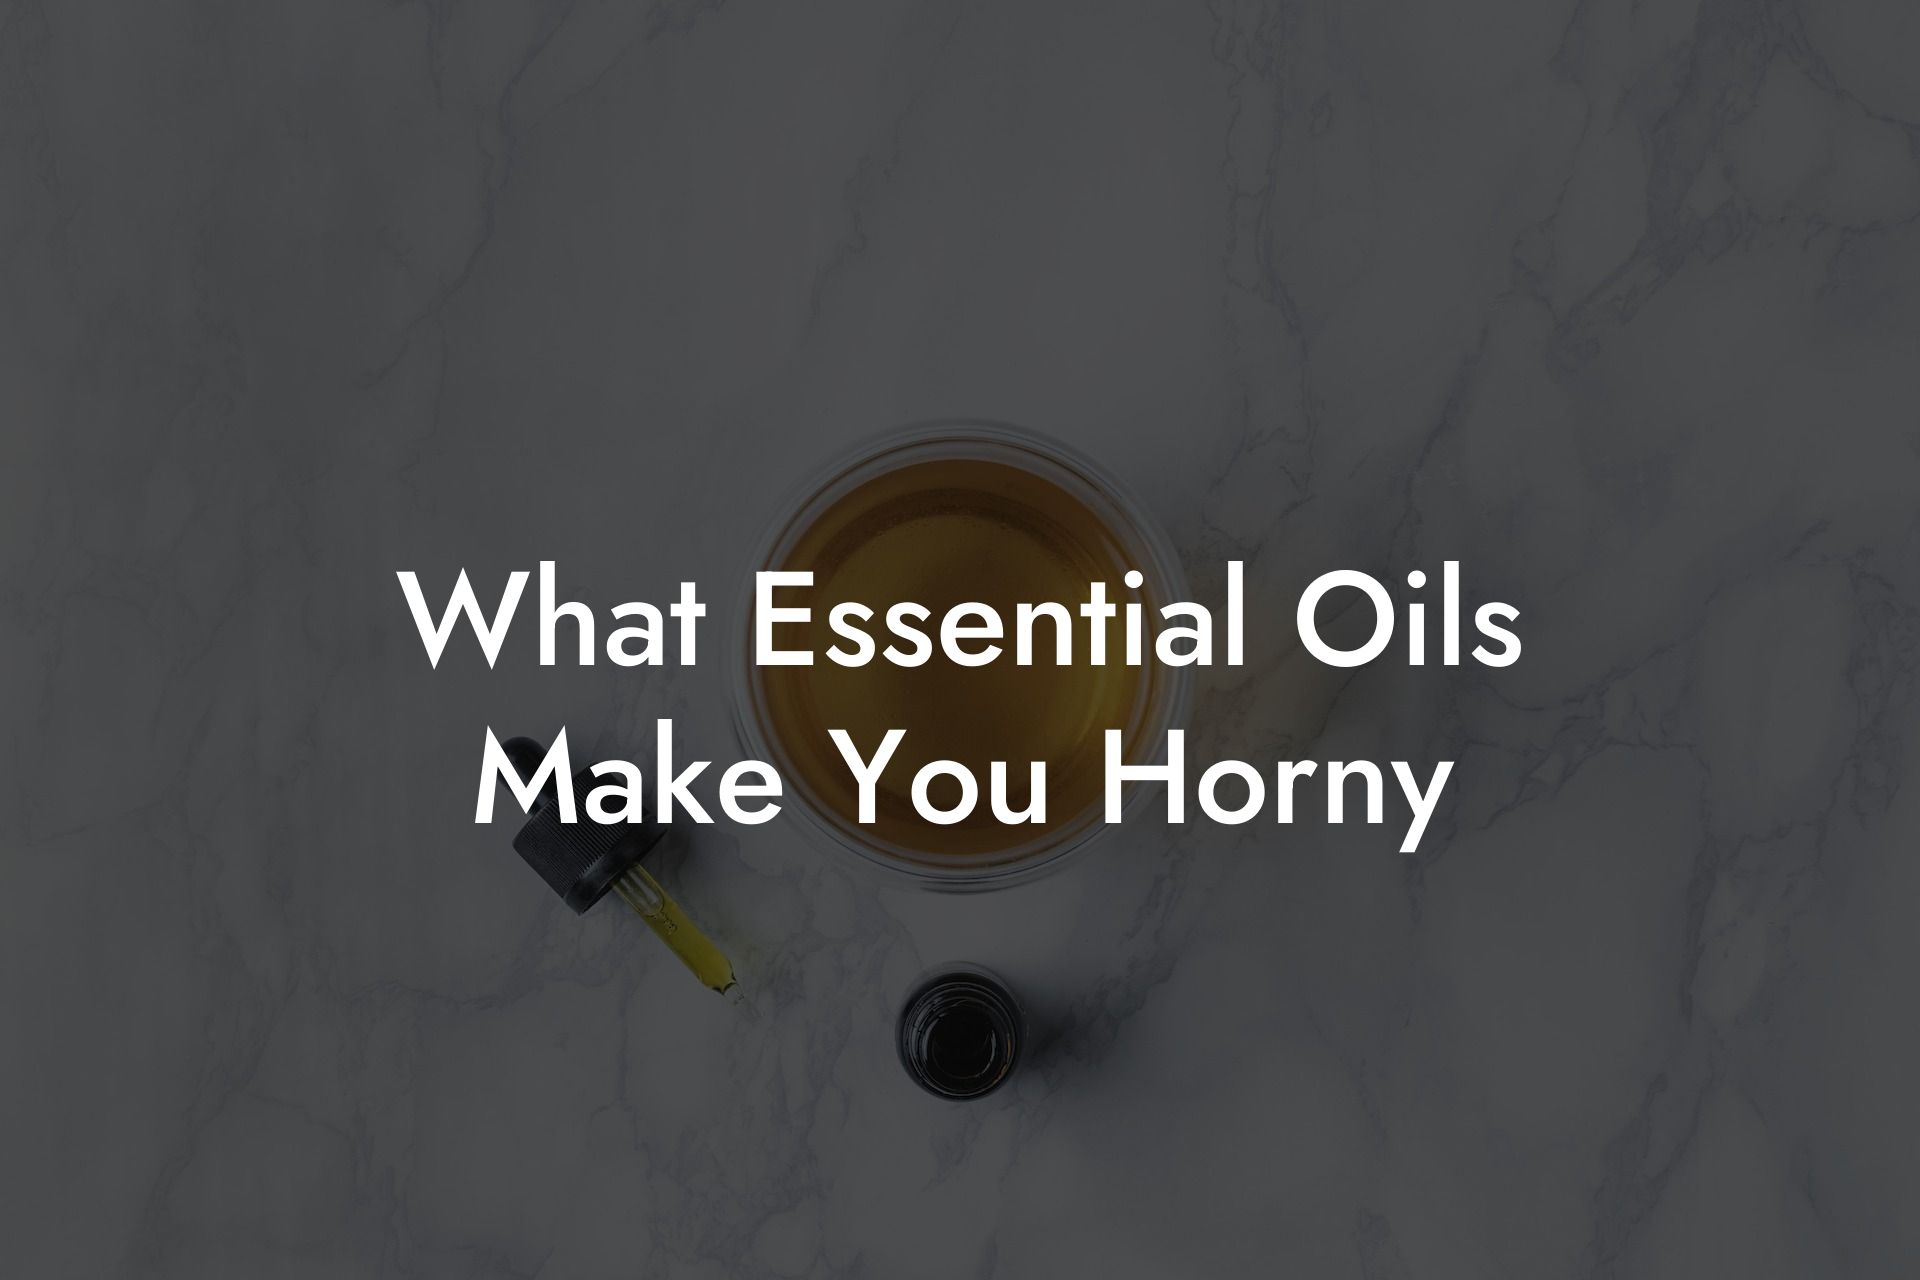 What Essential Oils Make You Horny